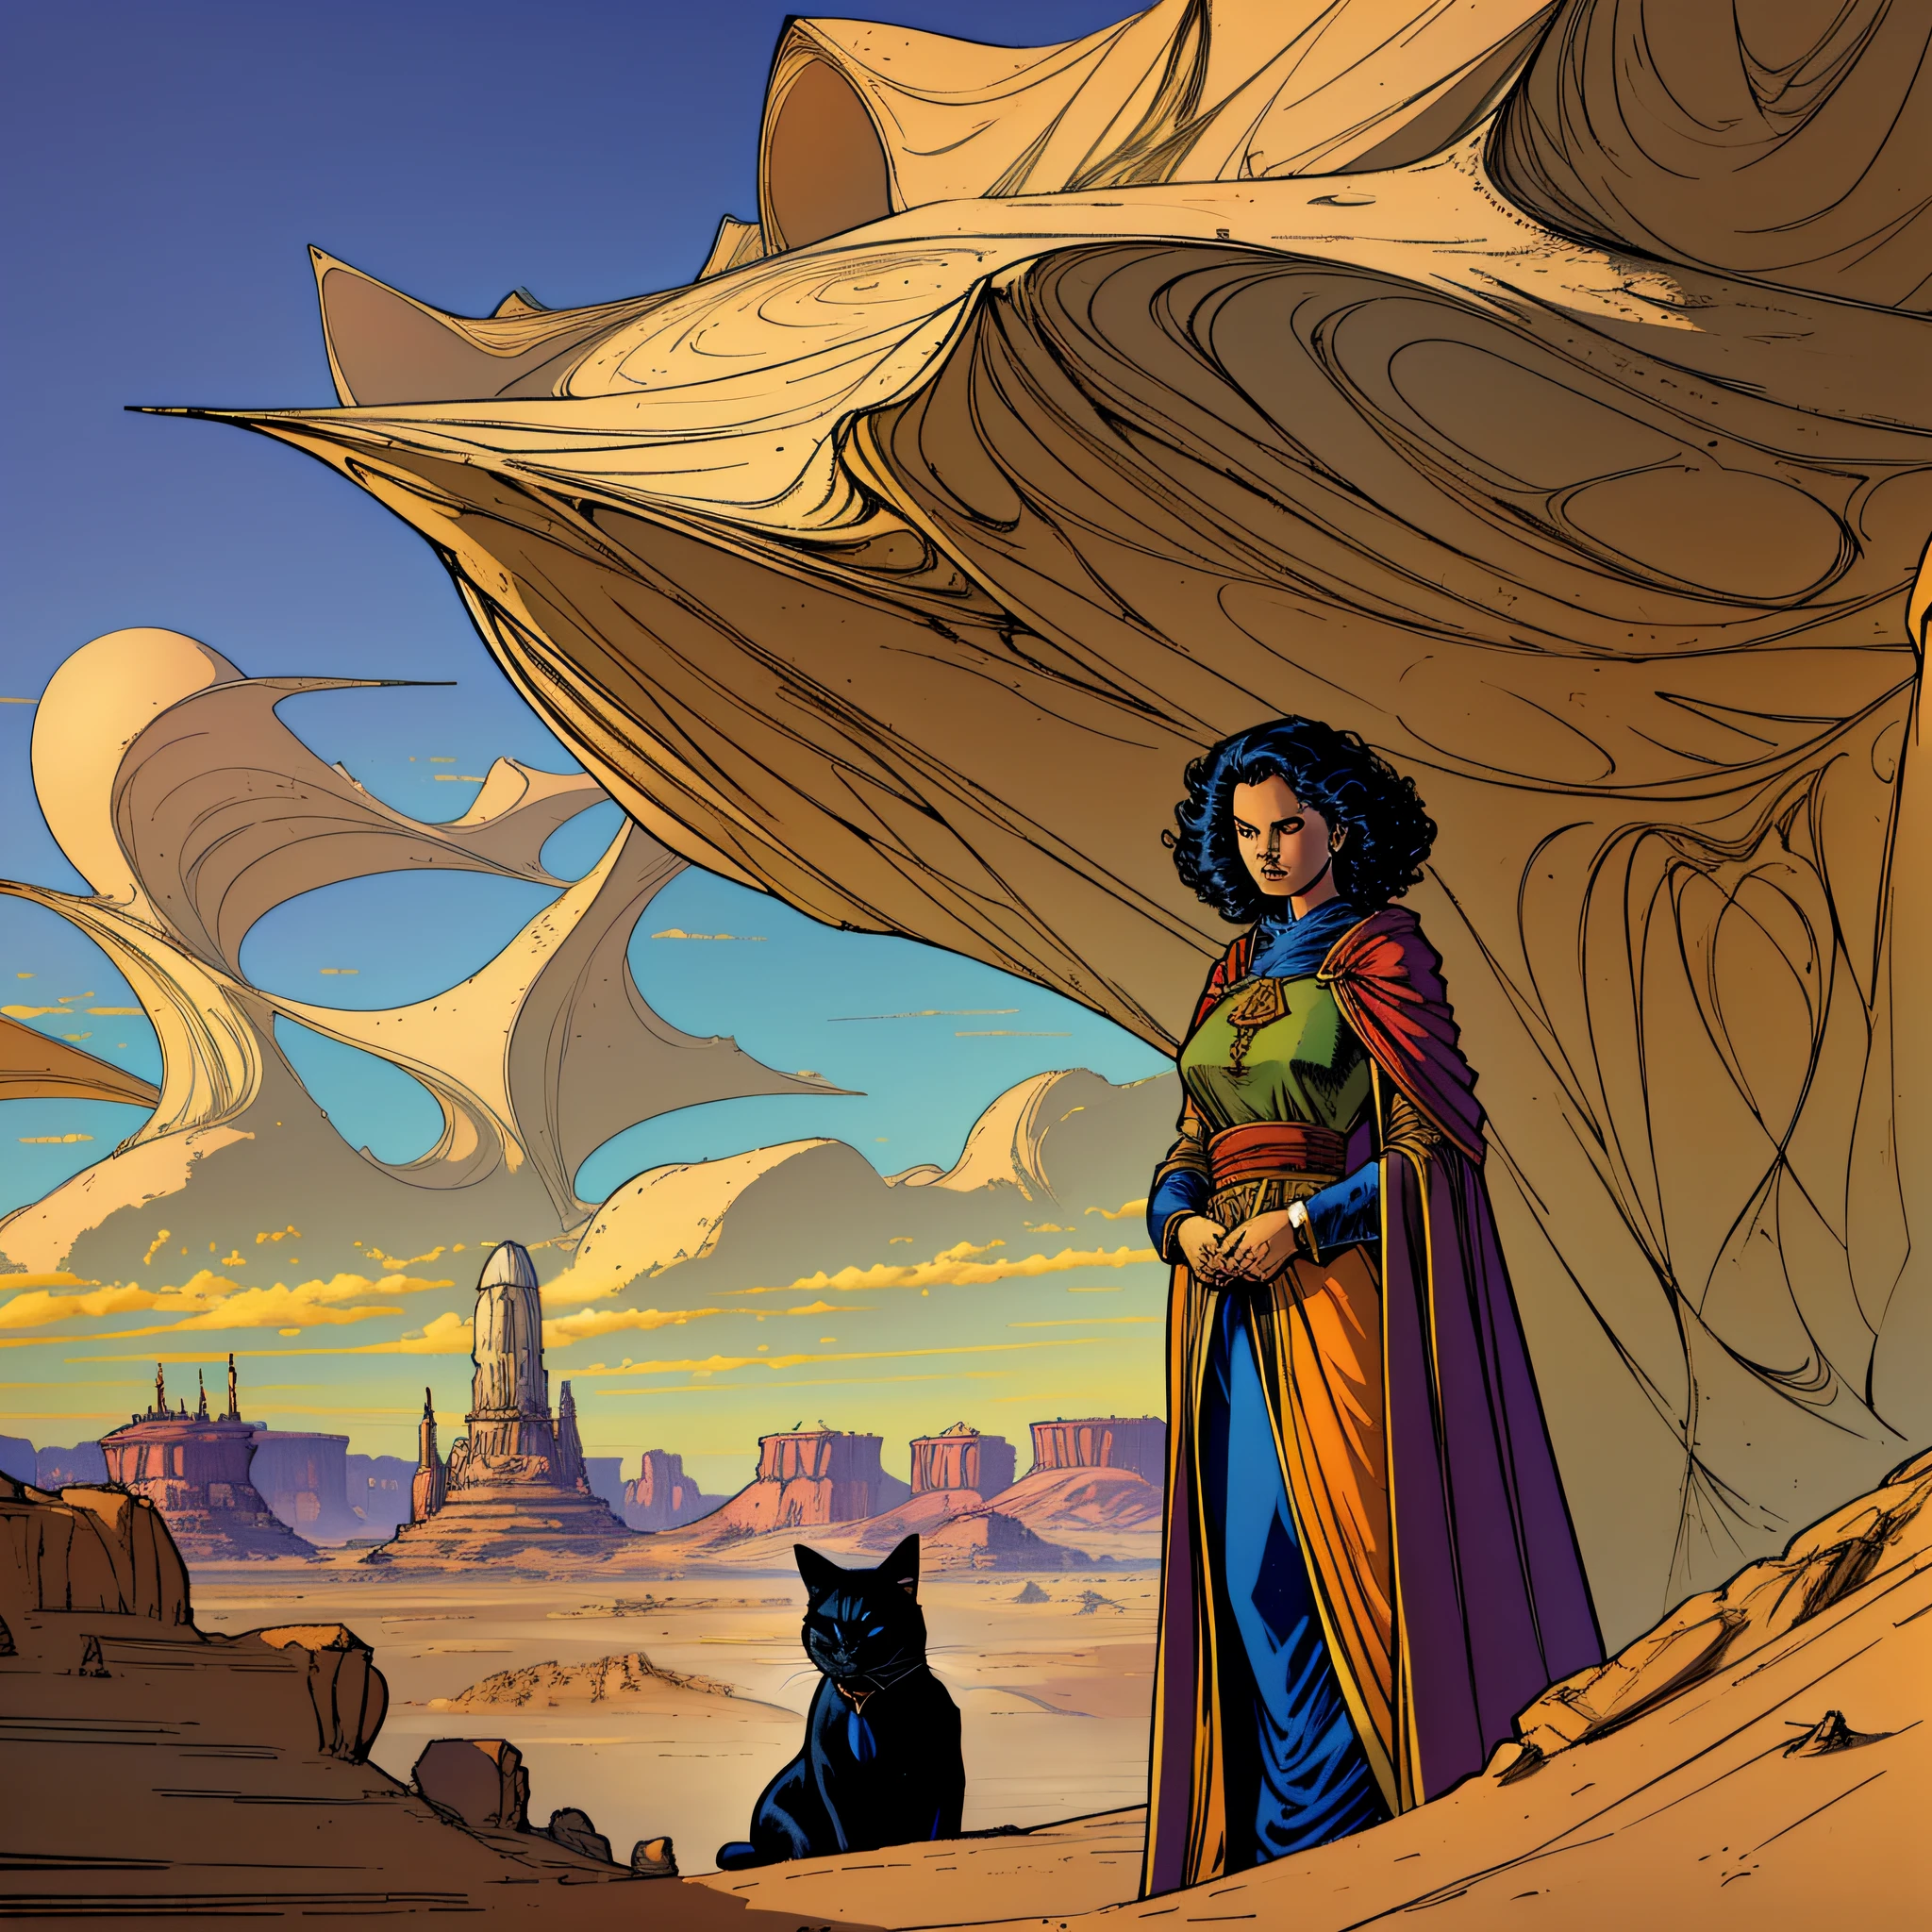 ((최상의 품질)), 단발머리 망토를 입은 여성이 검은 고양이와 함께 사막의 풍경을 내려다보는 그림, 뫼비우스 장 지로, 팬더 누구